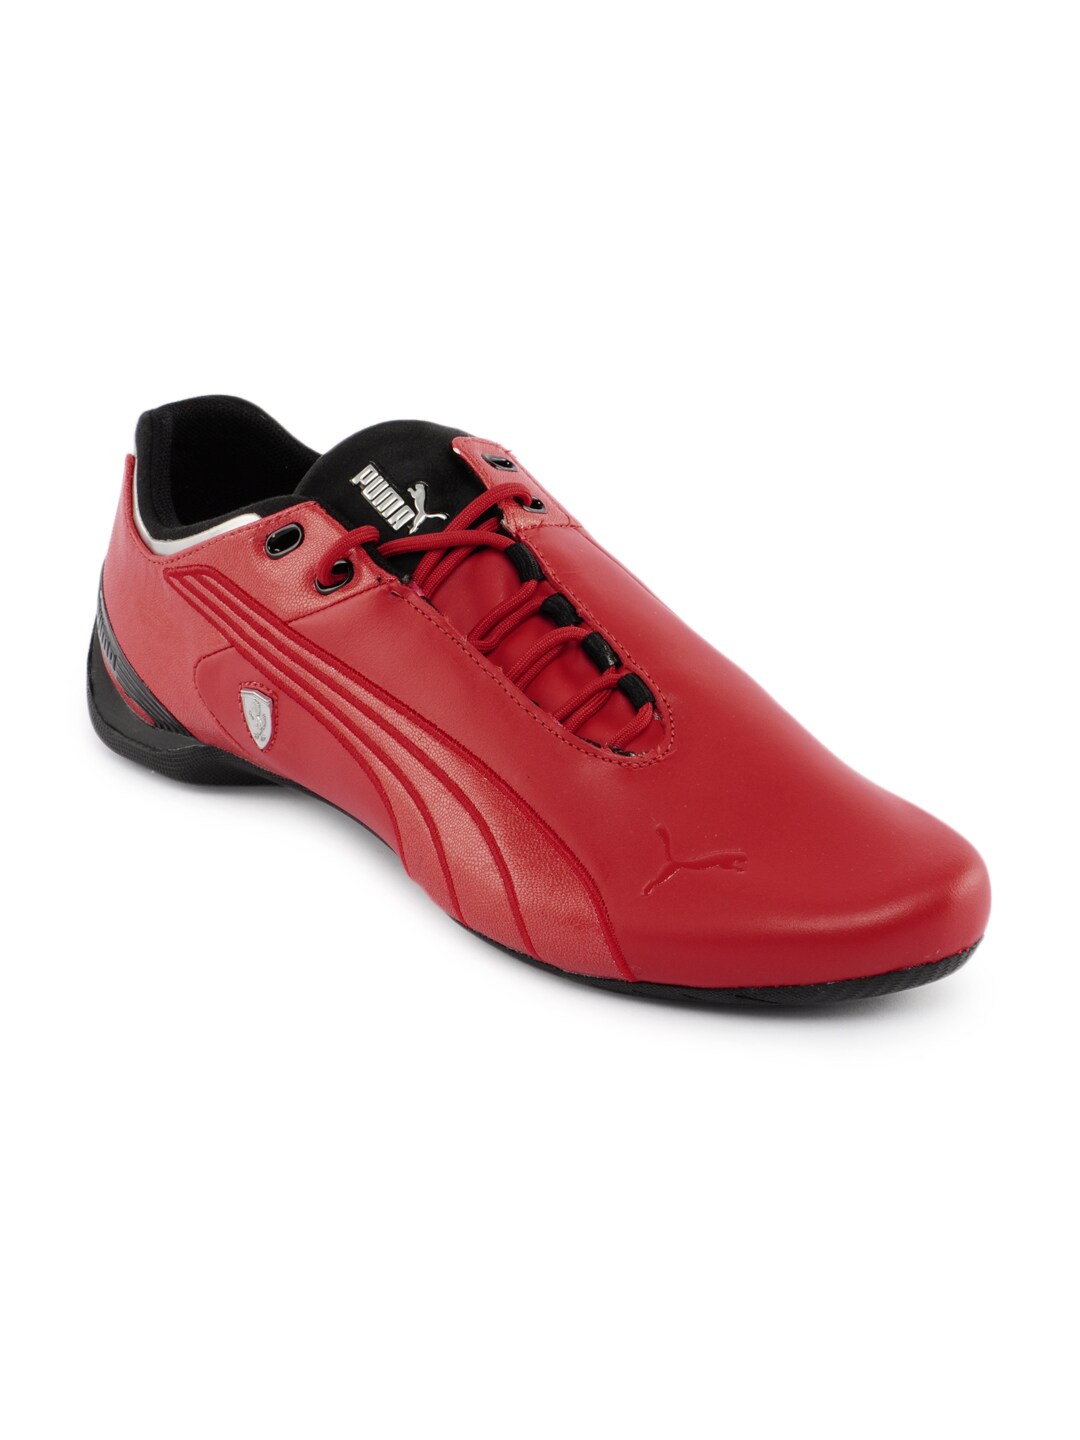 Puma Men Future Cat Red Casual Shoes